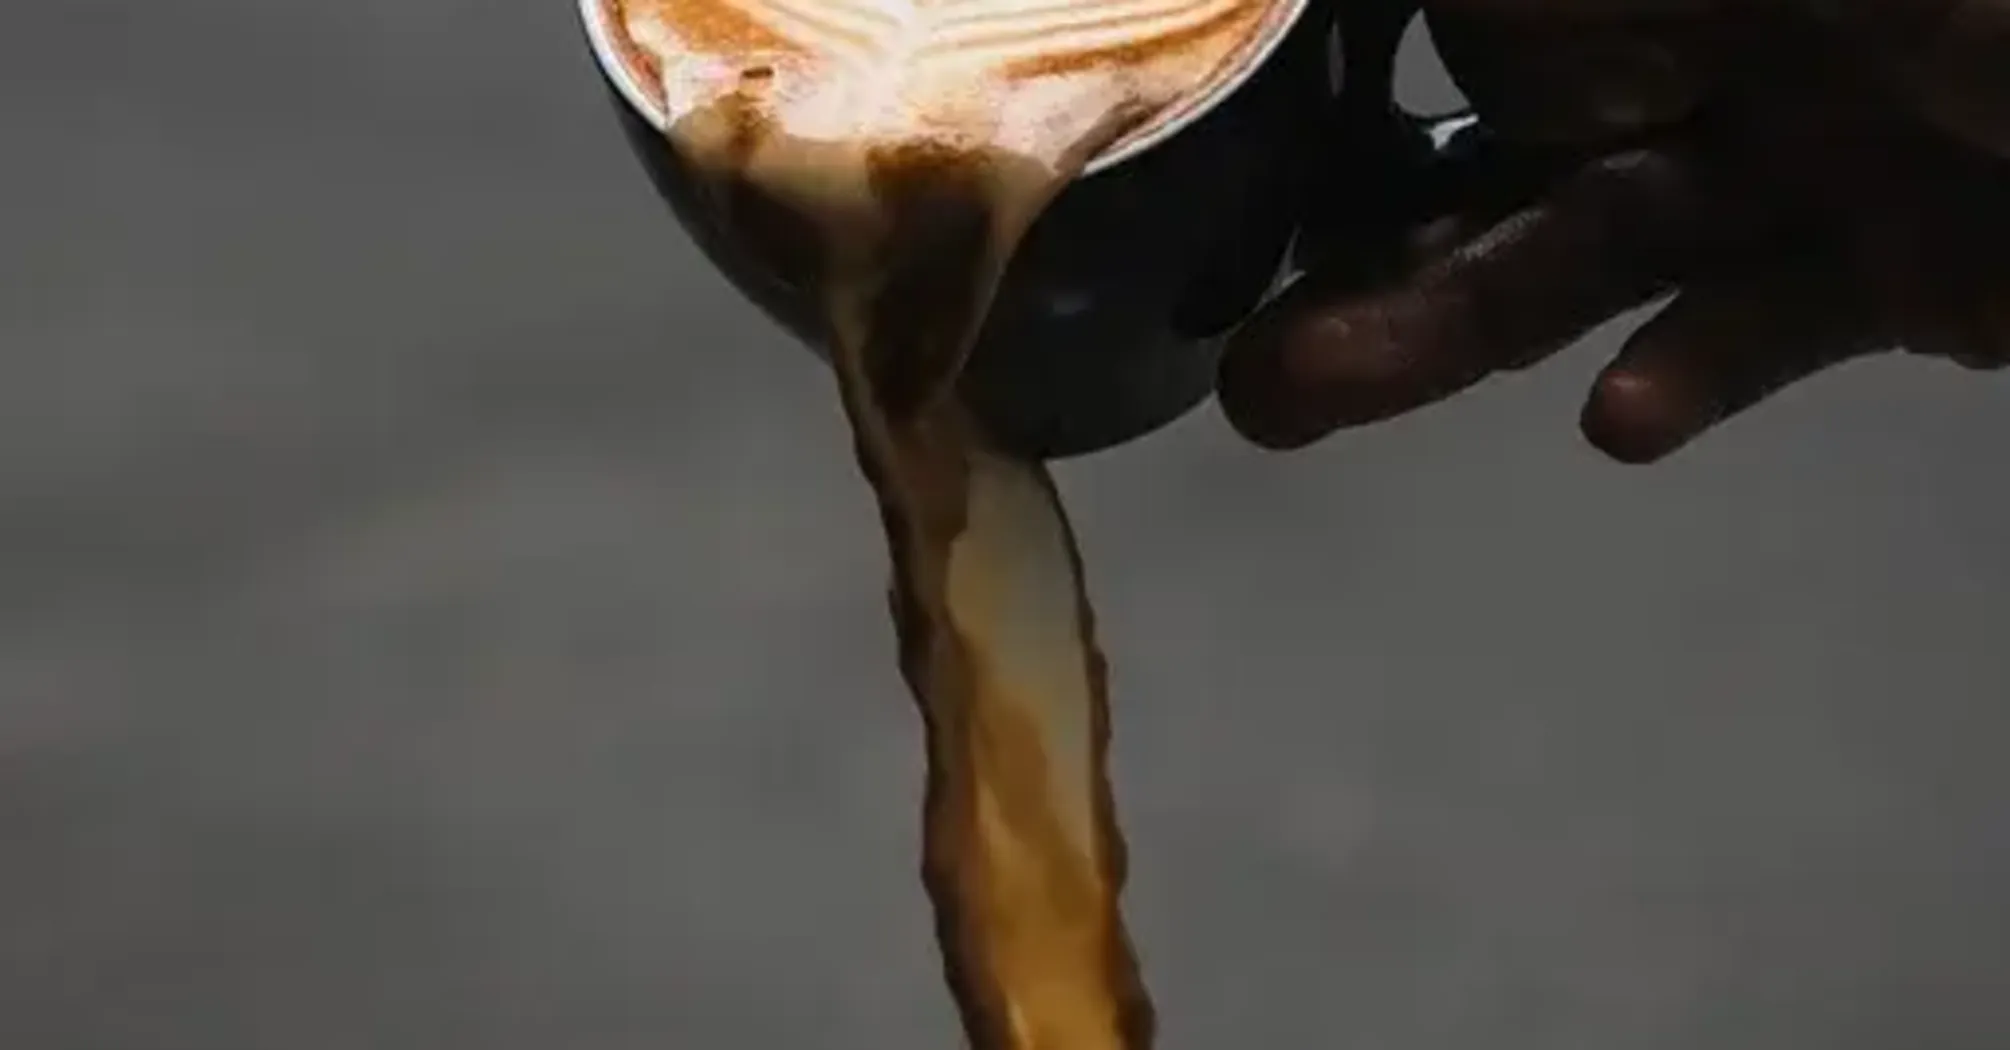 Які особливості приховує кава